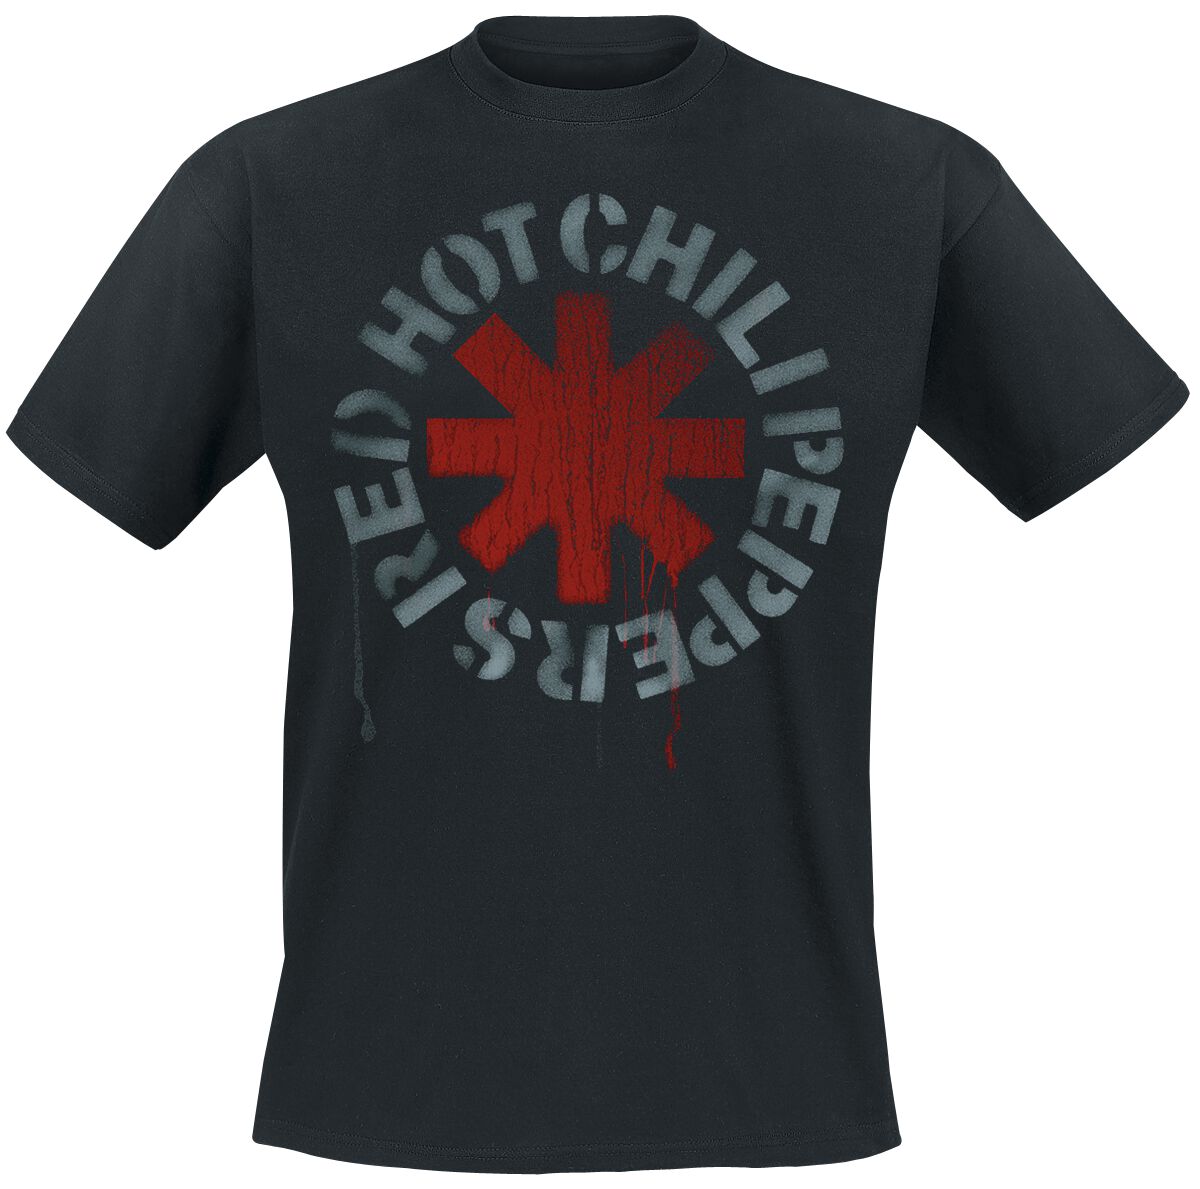 Red Hot Chili Peppers T-Shirt - Stencil Black - S bis 5XL - für Männer - Größe 4XL - schwarz  - Lizenziertes Merchandise!